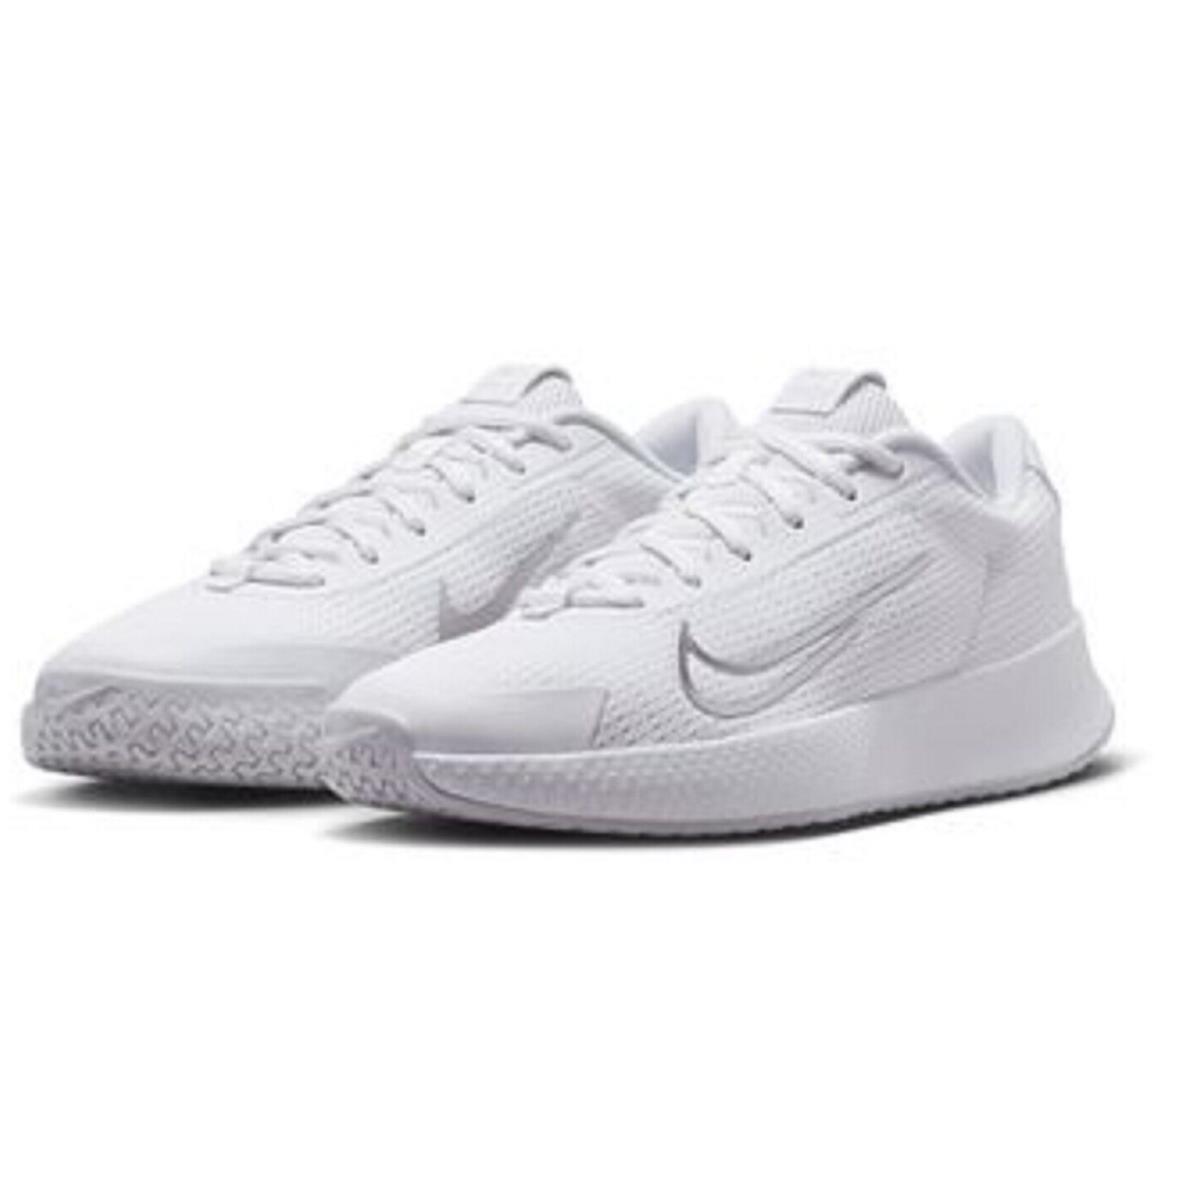 Nike Vapor Lite 2 HC Womens Size 12 Tennis Shoes DV2019 101 White